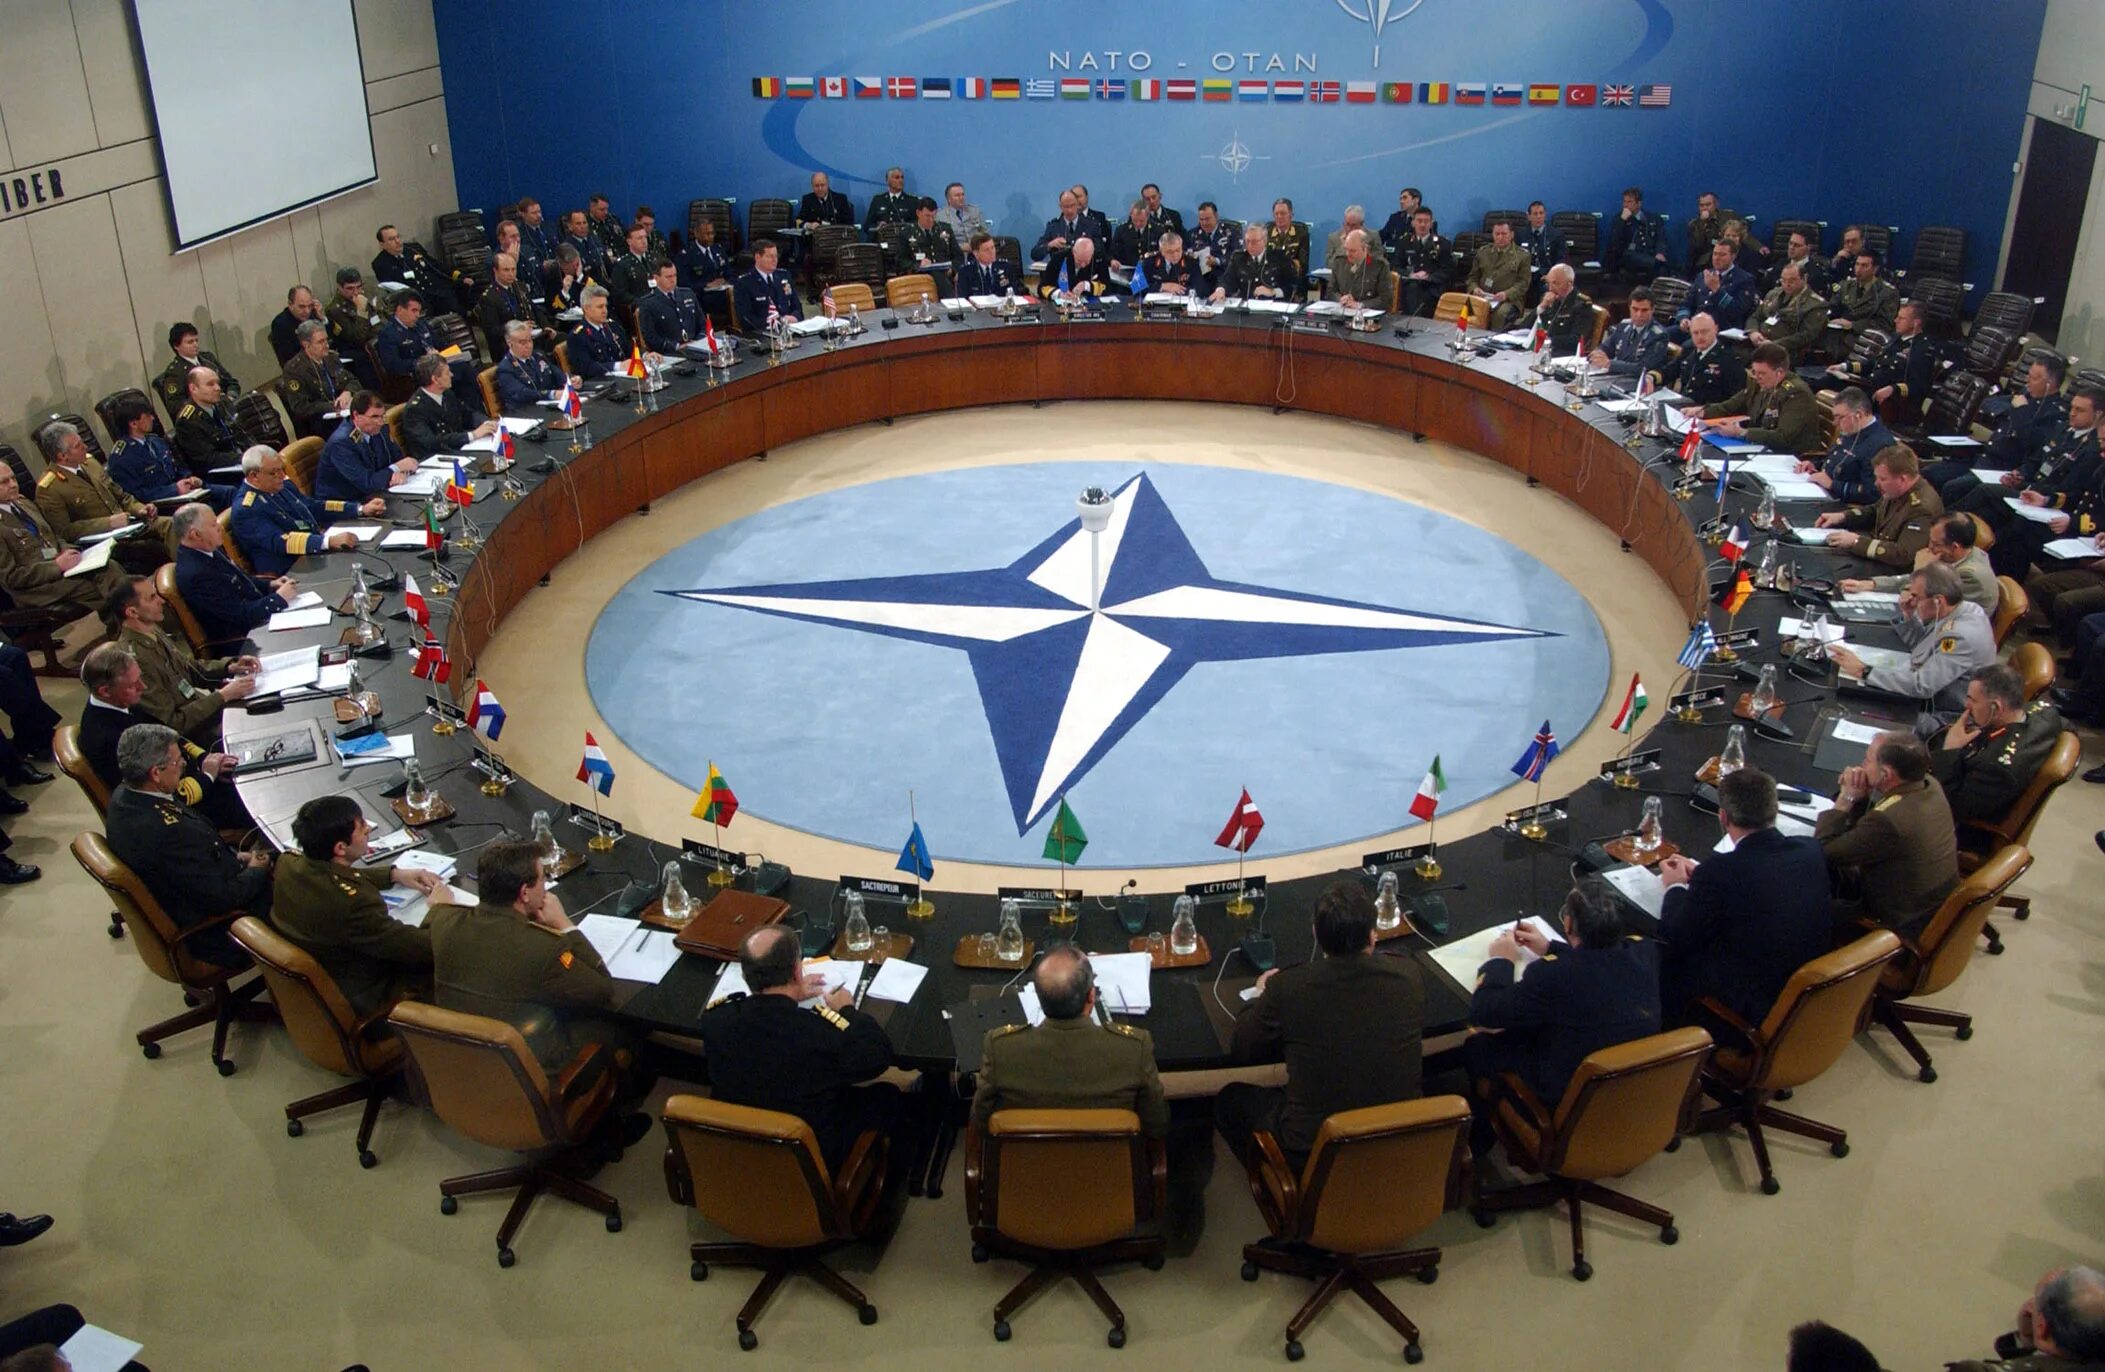 Нато конференции. Североатлантический Альянс НАТО. НАТО North Atlantic Treaty Organization. Саммит НАТО В Мадриде. Образование Североатлантического Союза НАТО.